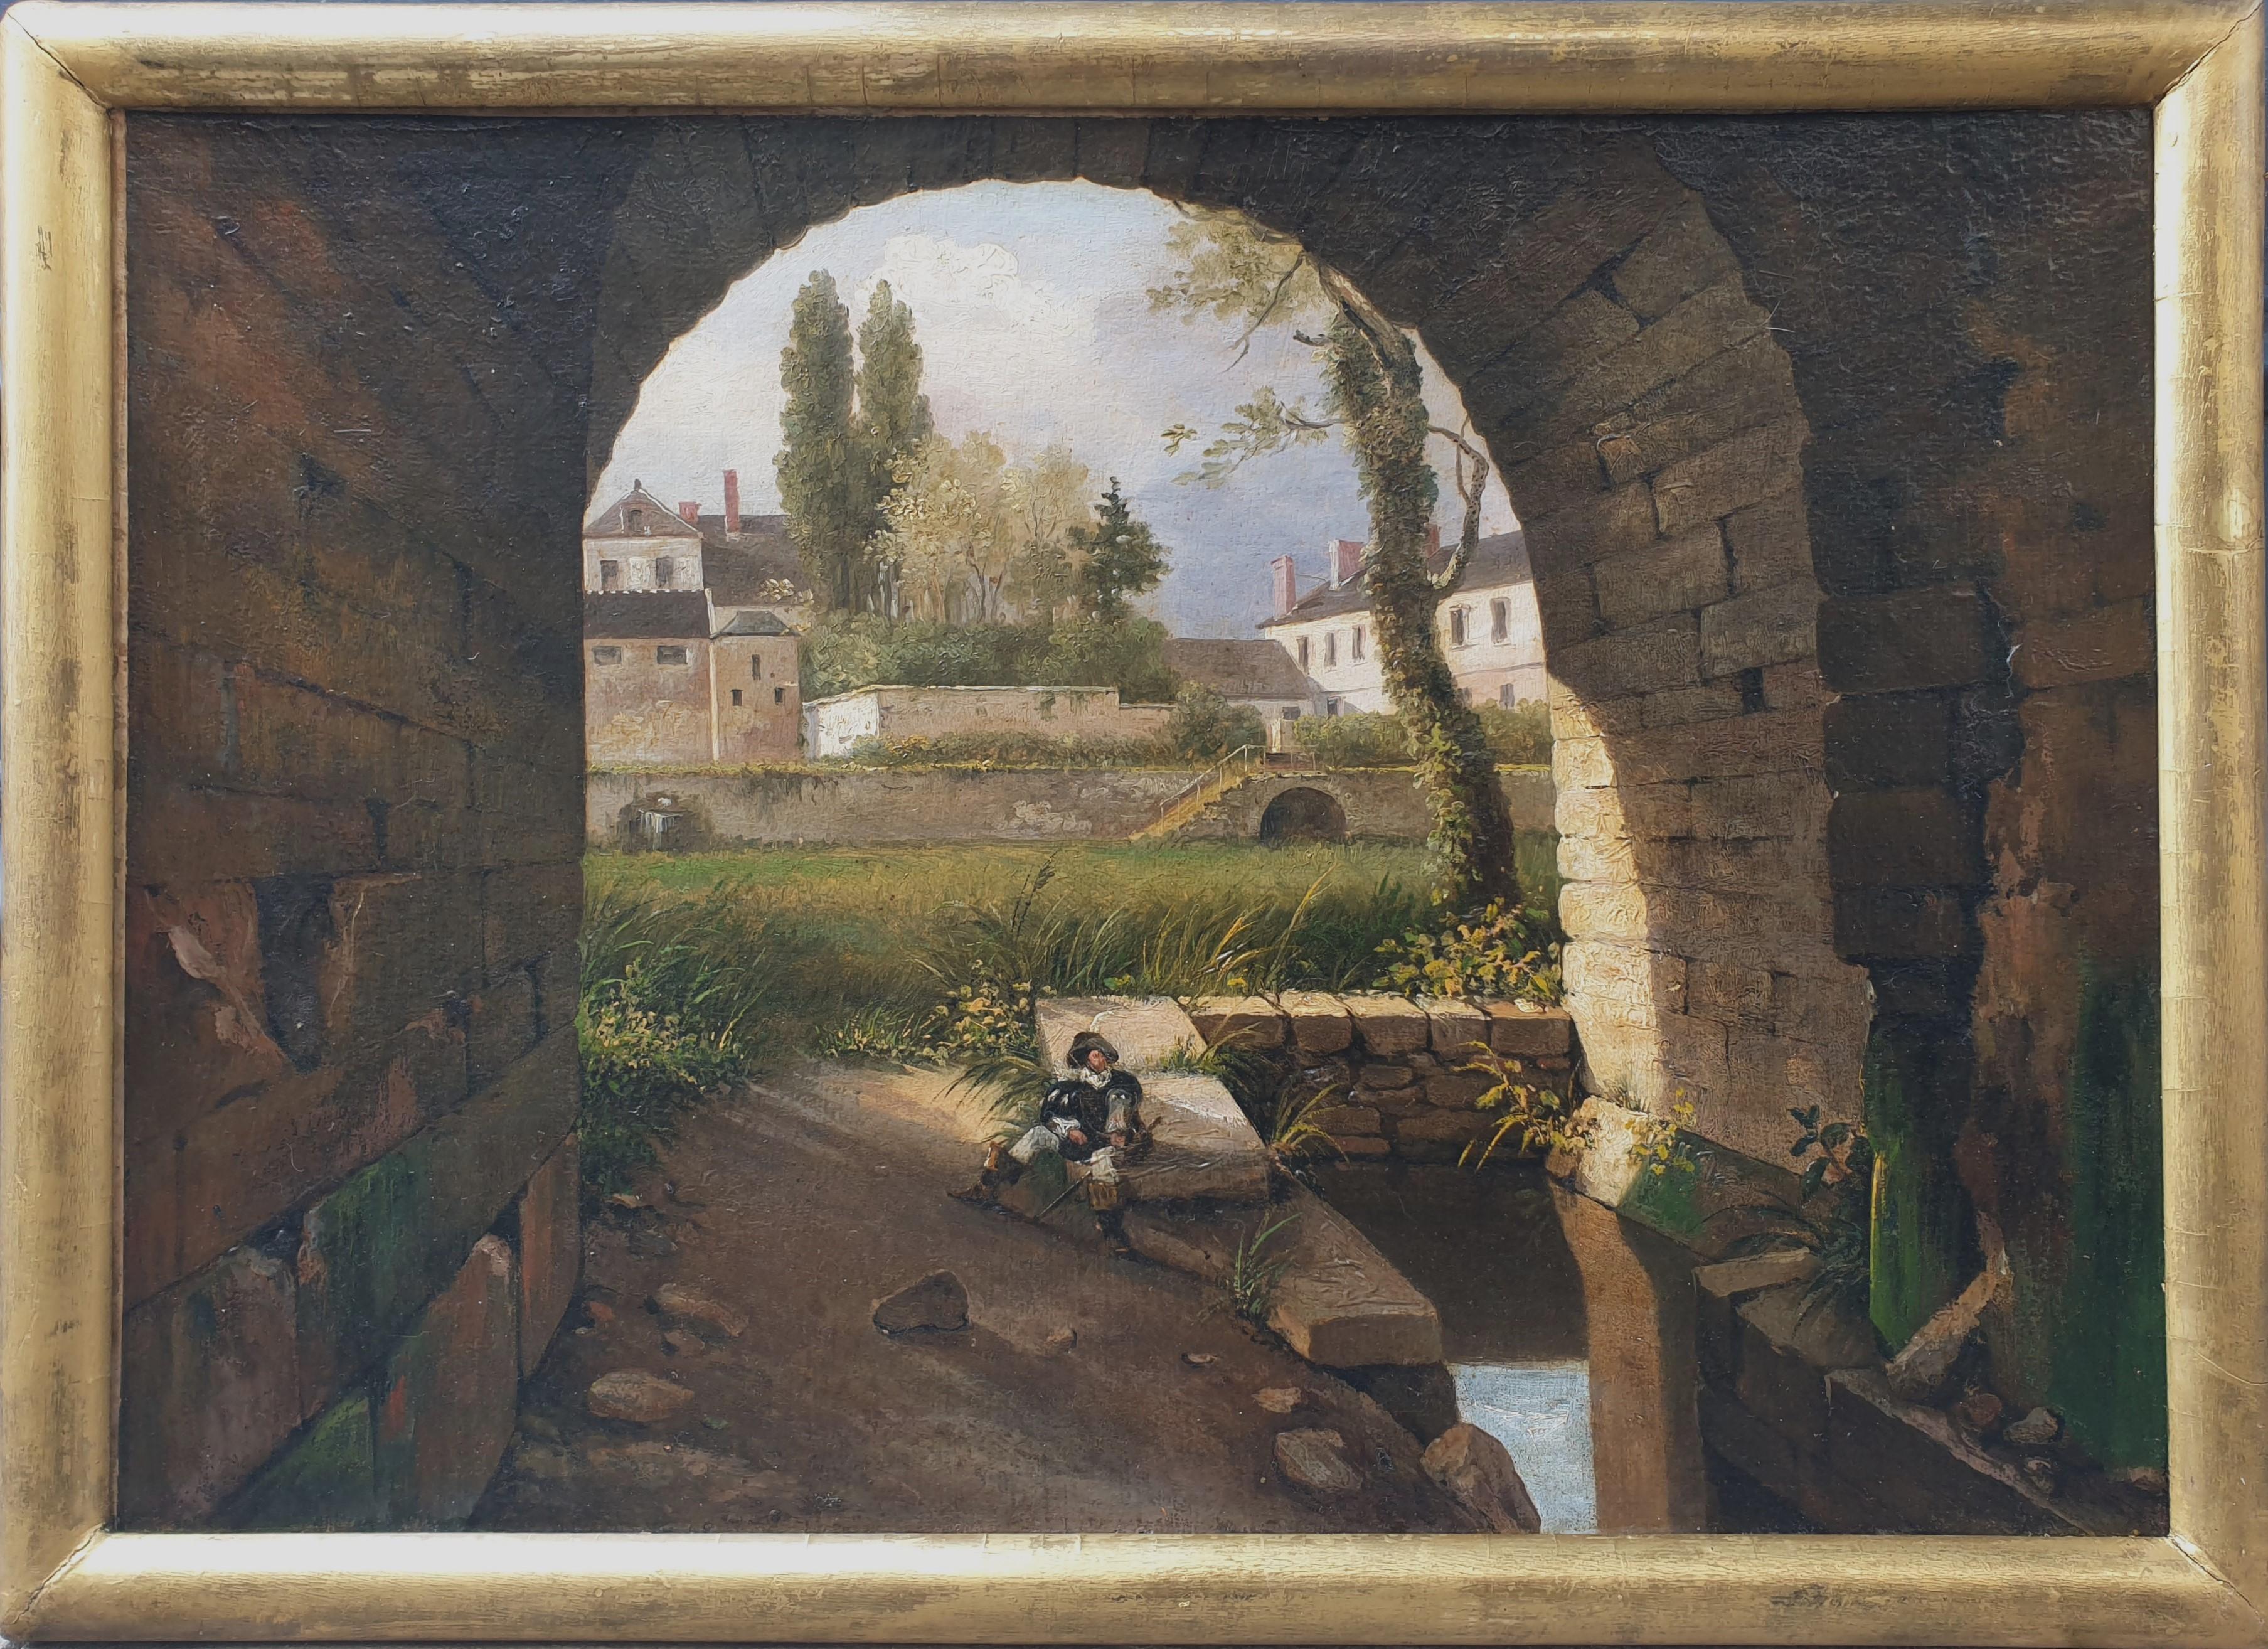 Paysage de l'école néoclassique française du 19e siècle près de Fontainebleau Avon musketeer